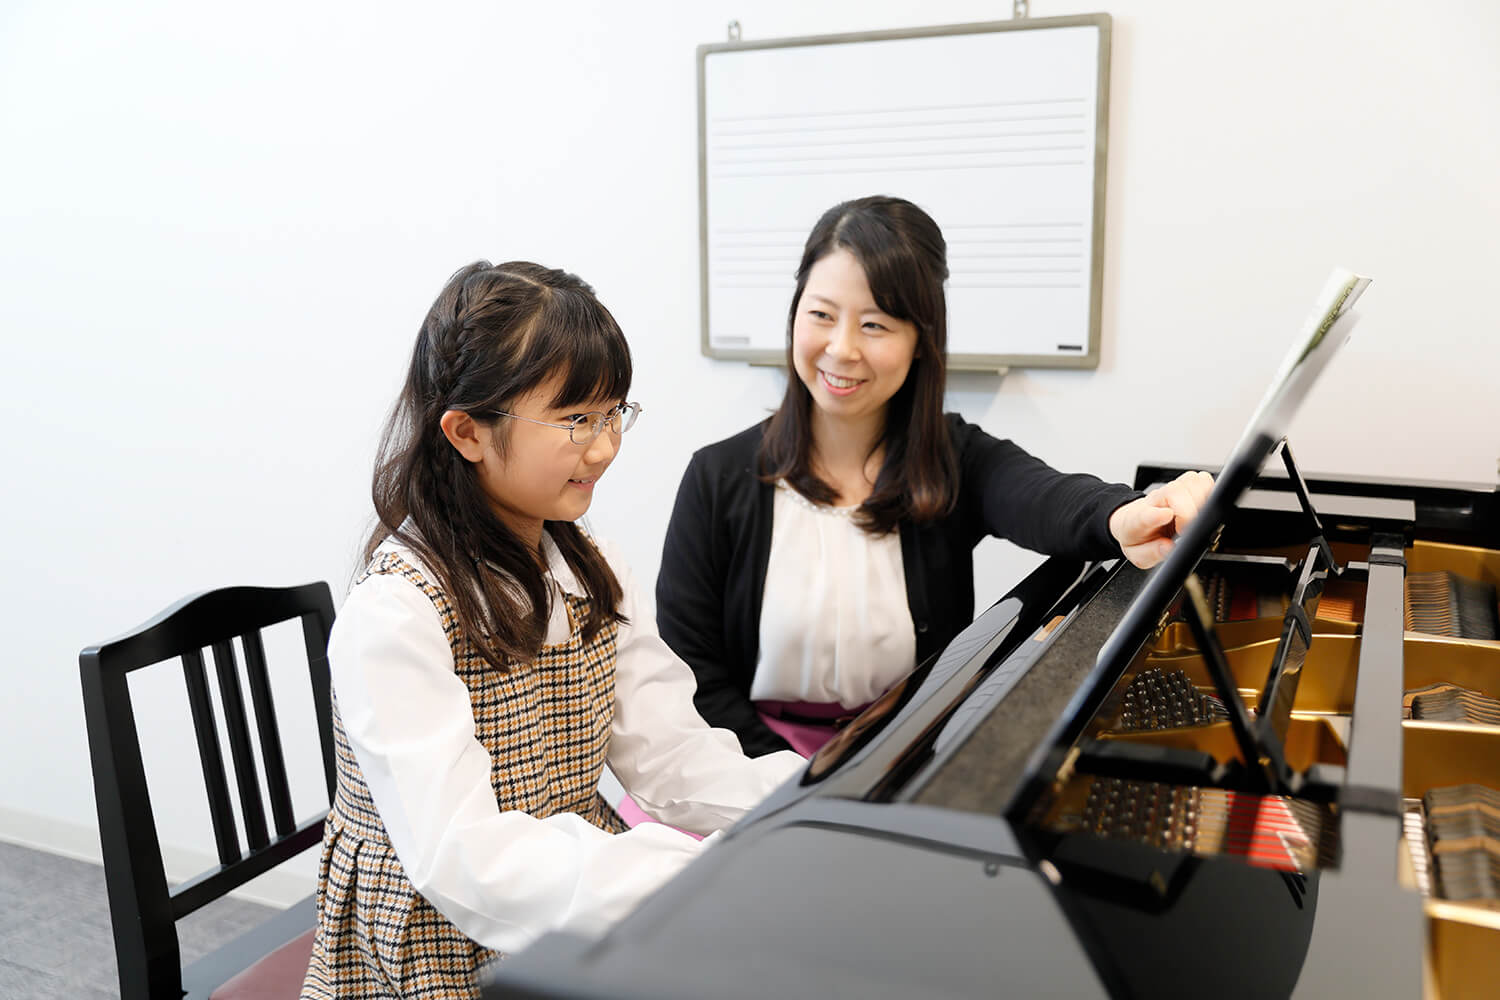 こんにちは！音楽教室担当の井本（いのもと）と申します！ いよいよ暖かくなってきて新学期が近づいてきましたね🌸この春からお子様にピアノを習わせたいなと思う方も多いのではないでしょうか。当店には、ピアノコース以外に幼児の基礎音楽コースというお子様向けのコースがございます。本日は、ピアノコースと幼児の基礎 […]